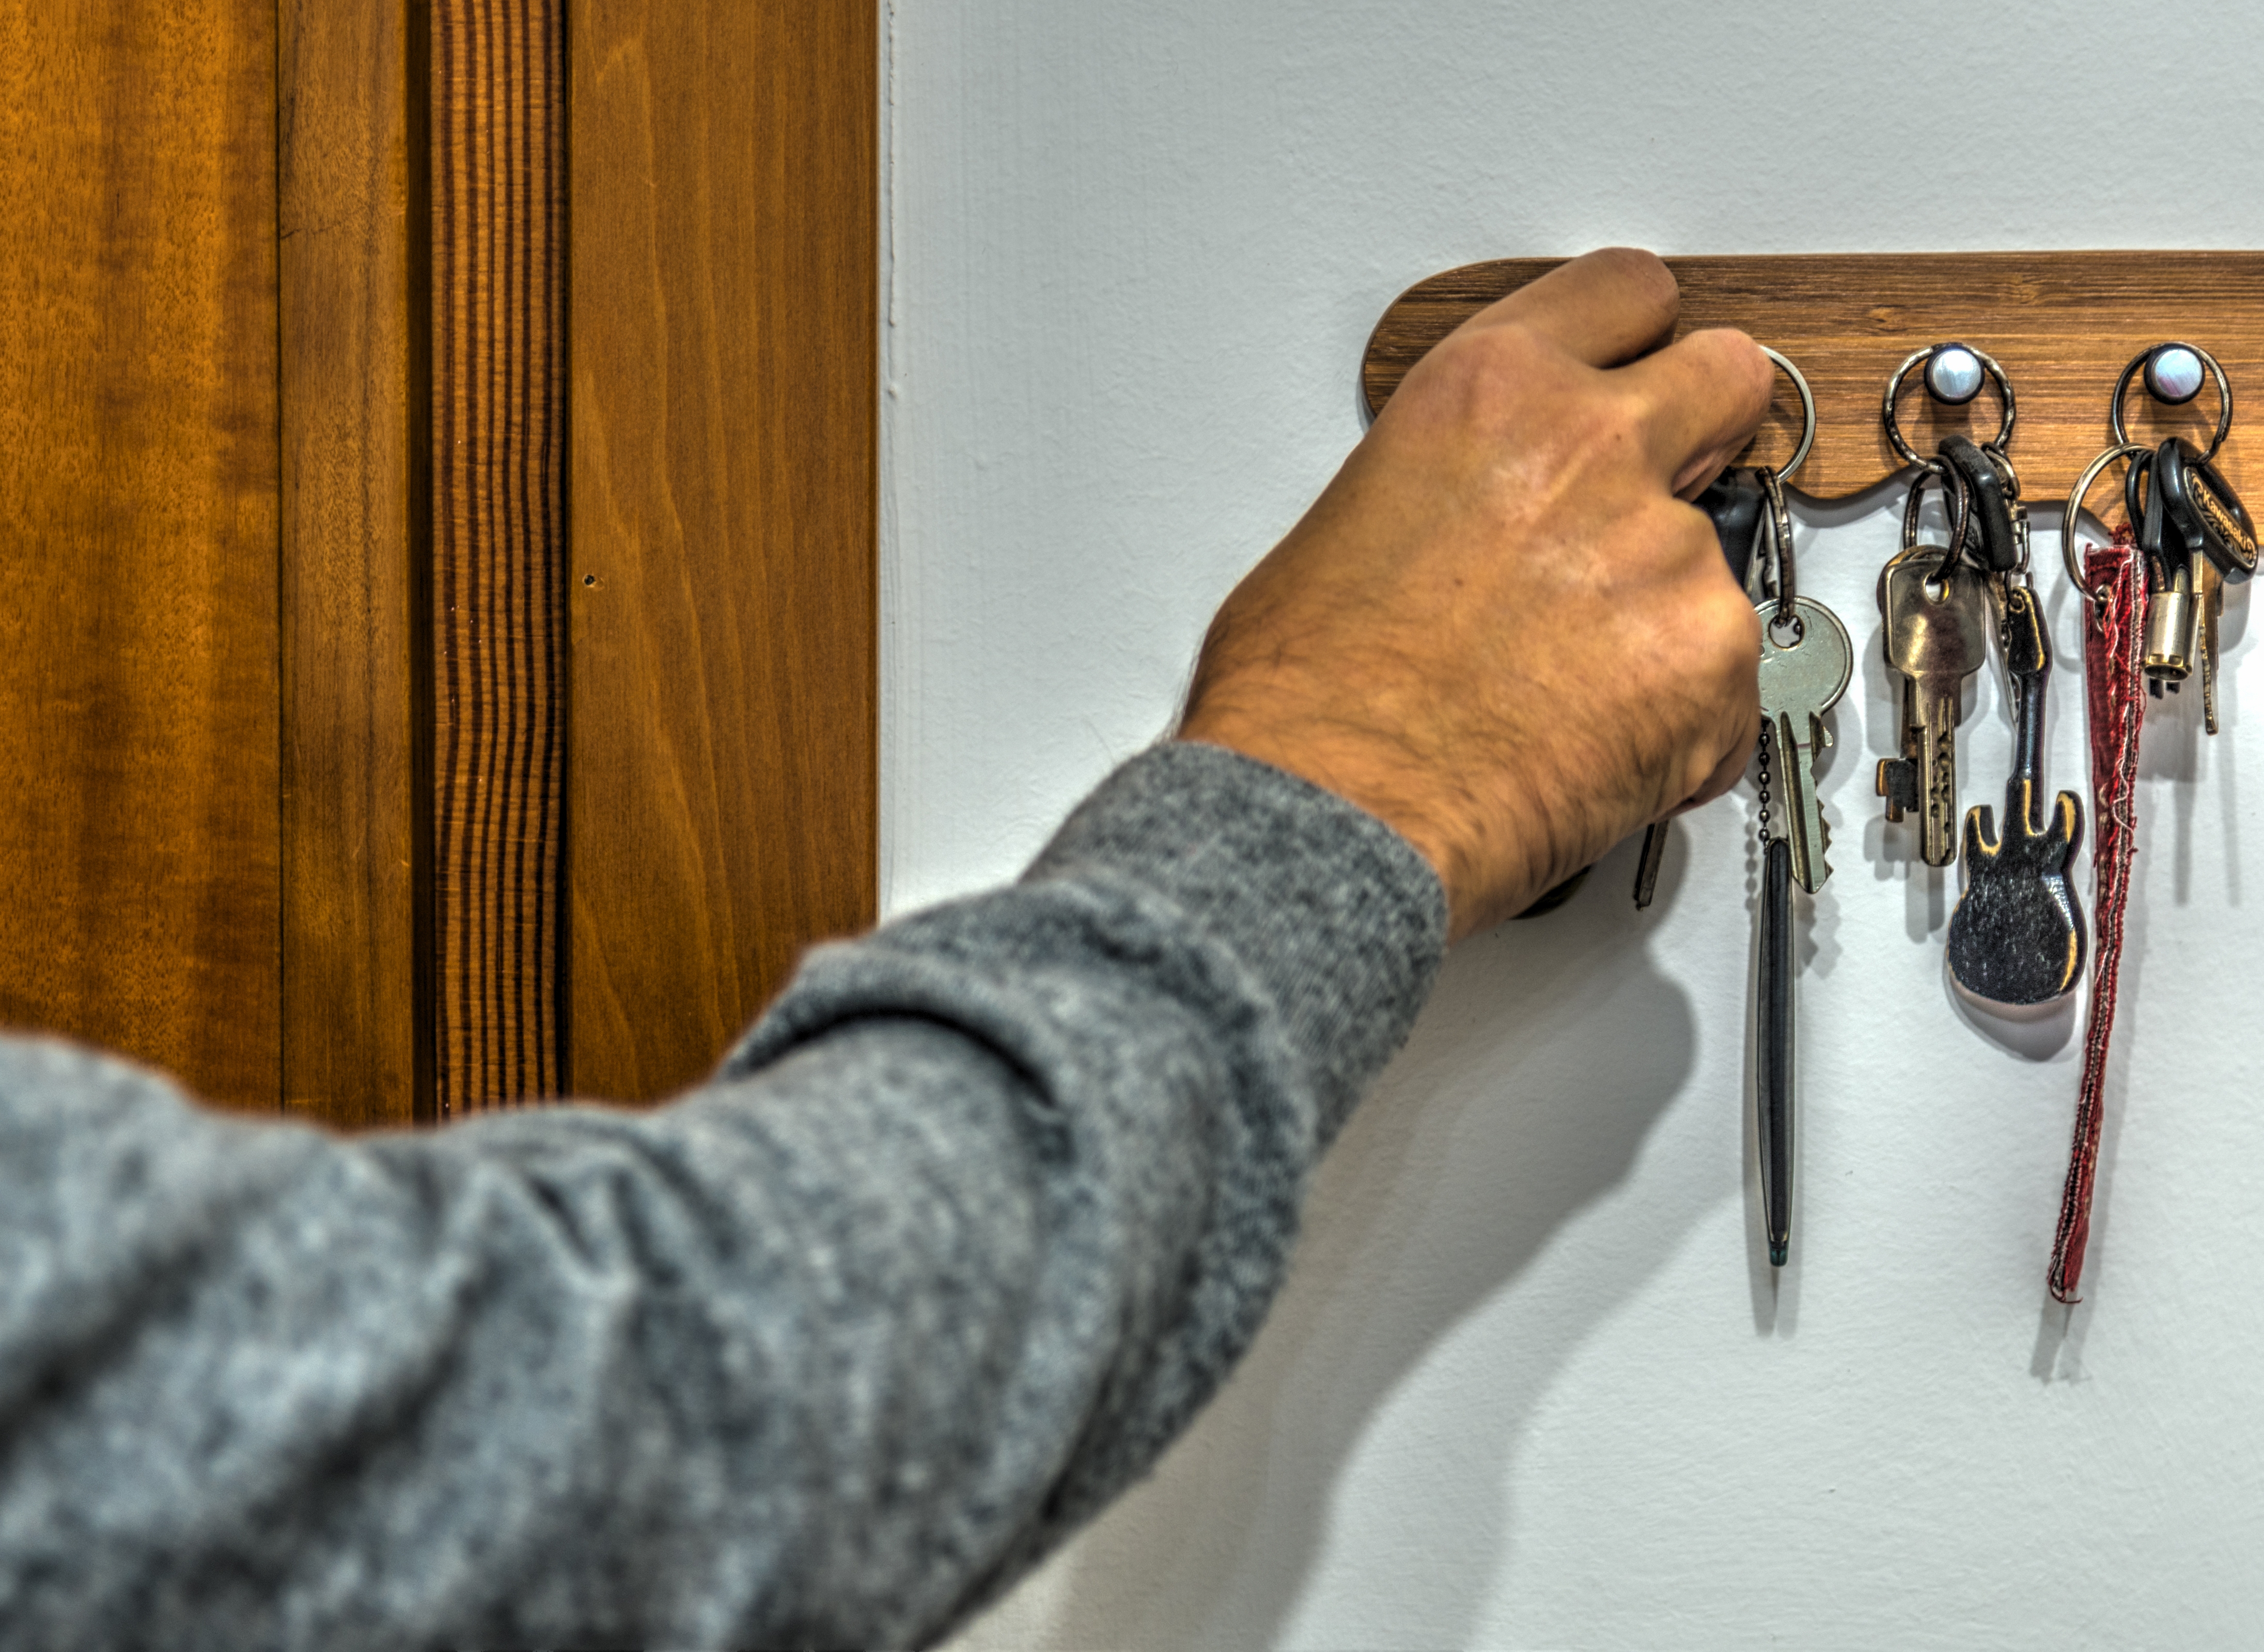 Primer plano de la mano de un hombre cogiendo una llave del llavero. | Fuente: Shutterstock